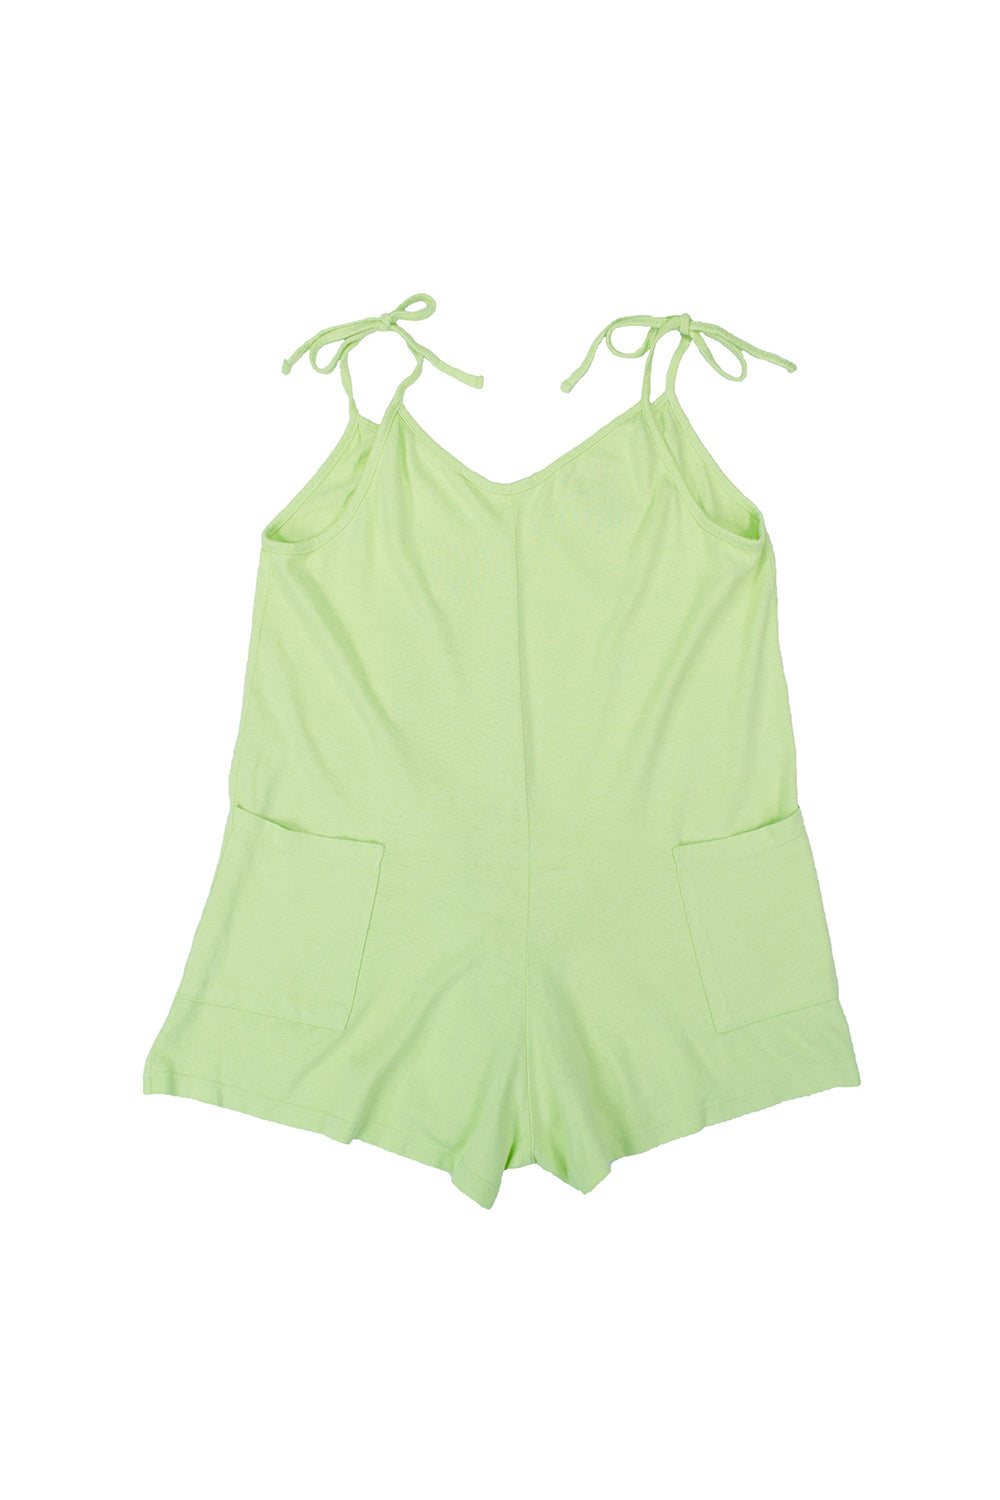 Sespe Short - Sale Colors | Jungmaven Hemp Clothing & Accessories / Color: Summer Grass